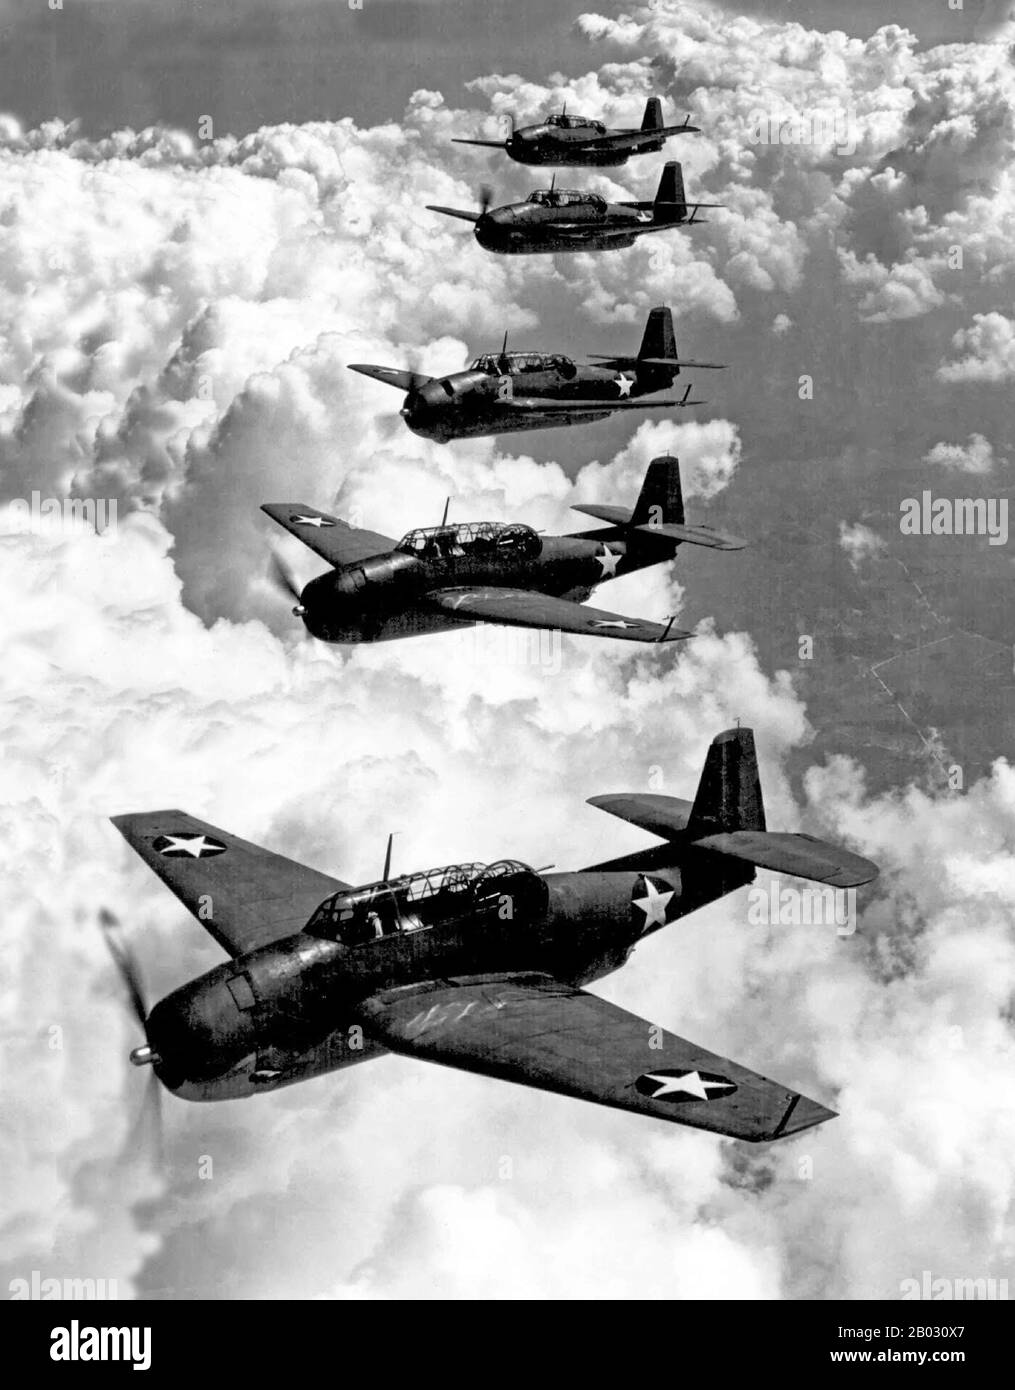 Il Grumman TBF Avenger (designato TBM per gli aeromobili prodotti da General Motors) è stato un bombardatore siluro sviluppato inizialmente per la Marina militare e il corpo dei Marine degli Stati Uniti, e infine utilizzato da diversi servizi aerei e navali in tutto il mondo. L'vendicatore entrò nel servizio degli Stati Uniti nel 1942, e vide l'azione per la prima volta durante la battaglia di Midway. Nonostante la perdita di cinque dei sei Avengers sul suo debutto di combattimento, è sopravvissuto in servizio per diventare uno dei bombardieri torpedici eccezionali della seconda guerra mondiale Molto modificato dopo la guerra, è rimasto in uso fino alla 1960s. Foto Stock